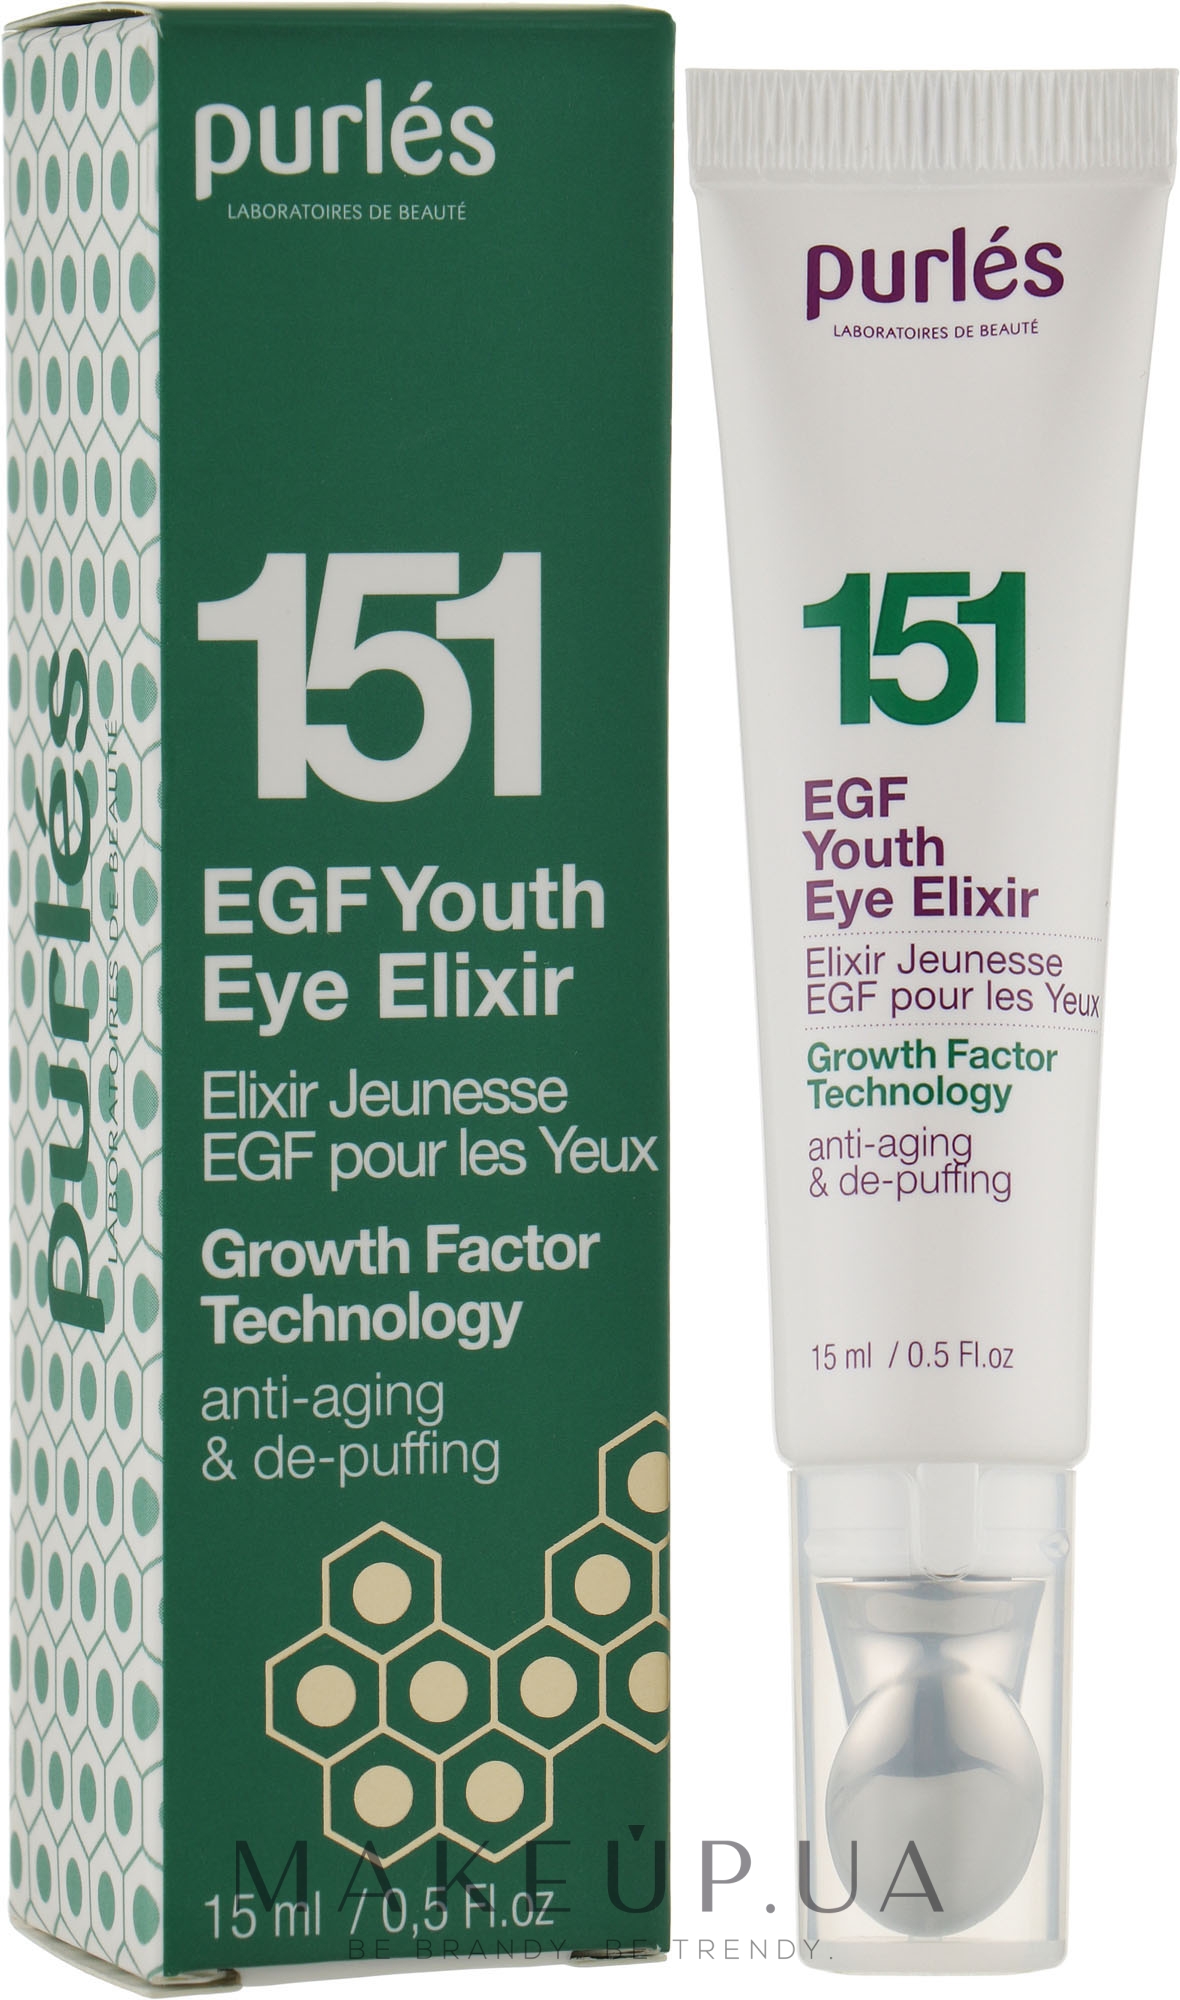 Эликсир молодости для глаз - Purles Growth Factor Technology 151 Youth Eye Elixir — фото 15ml